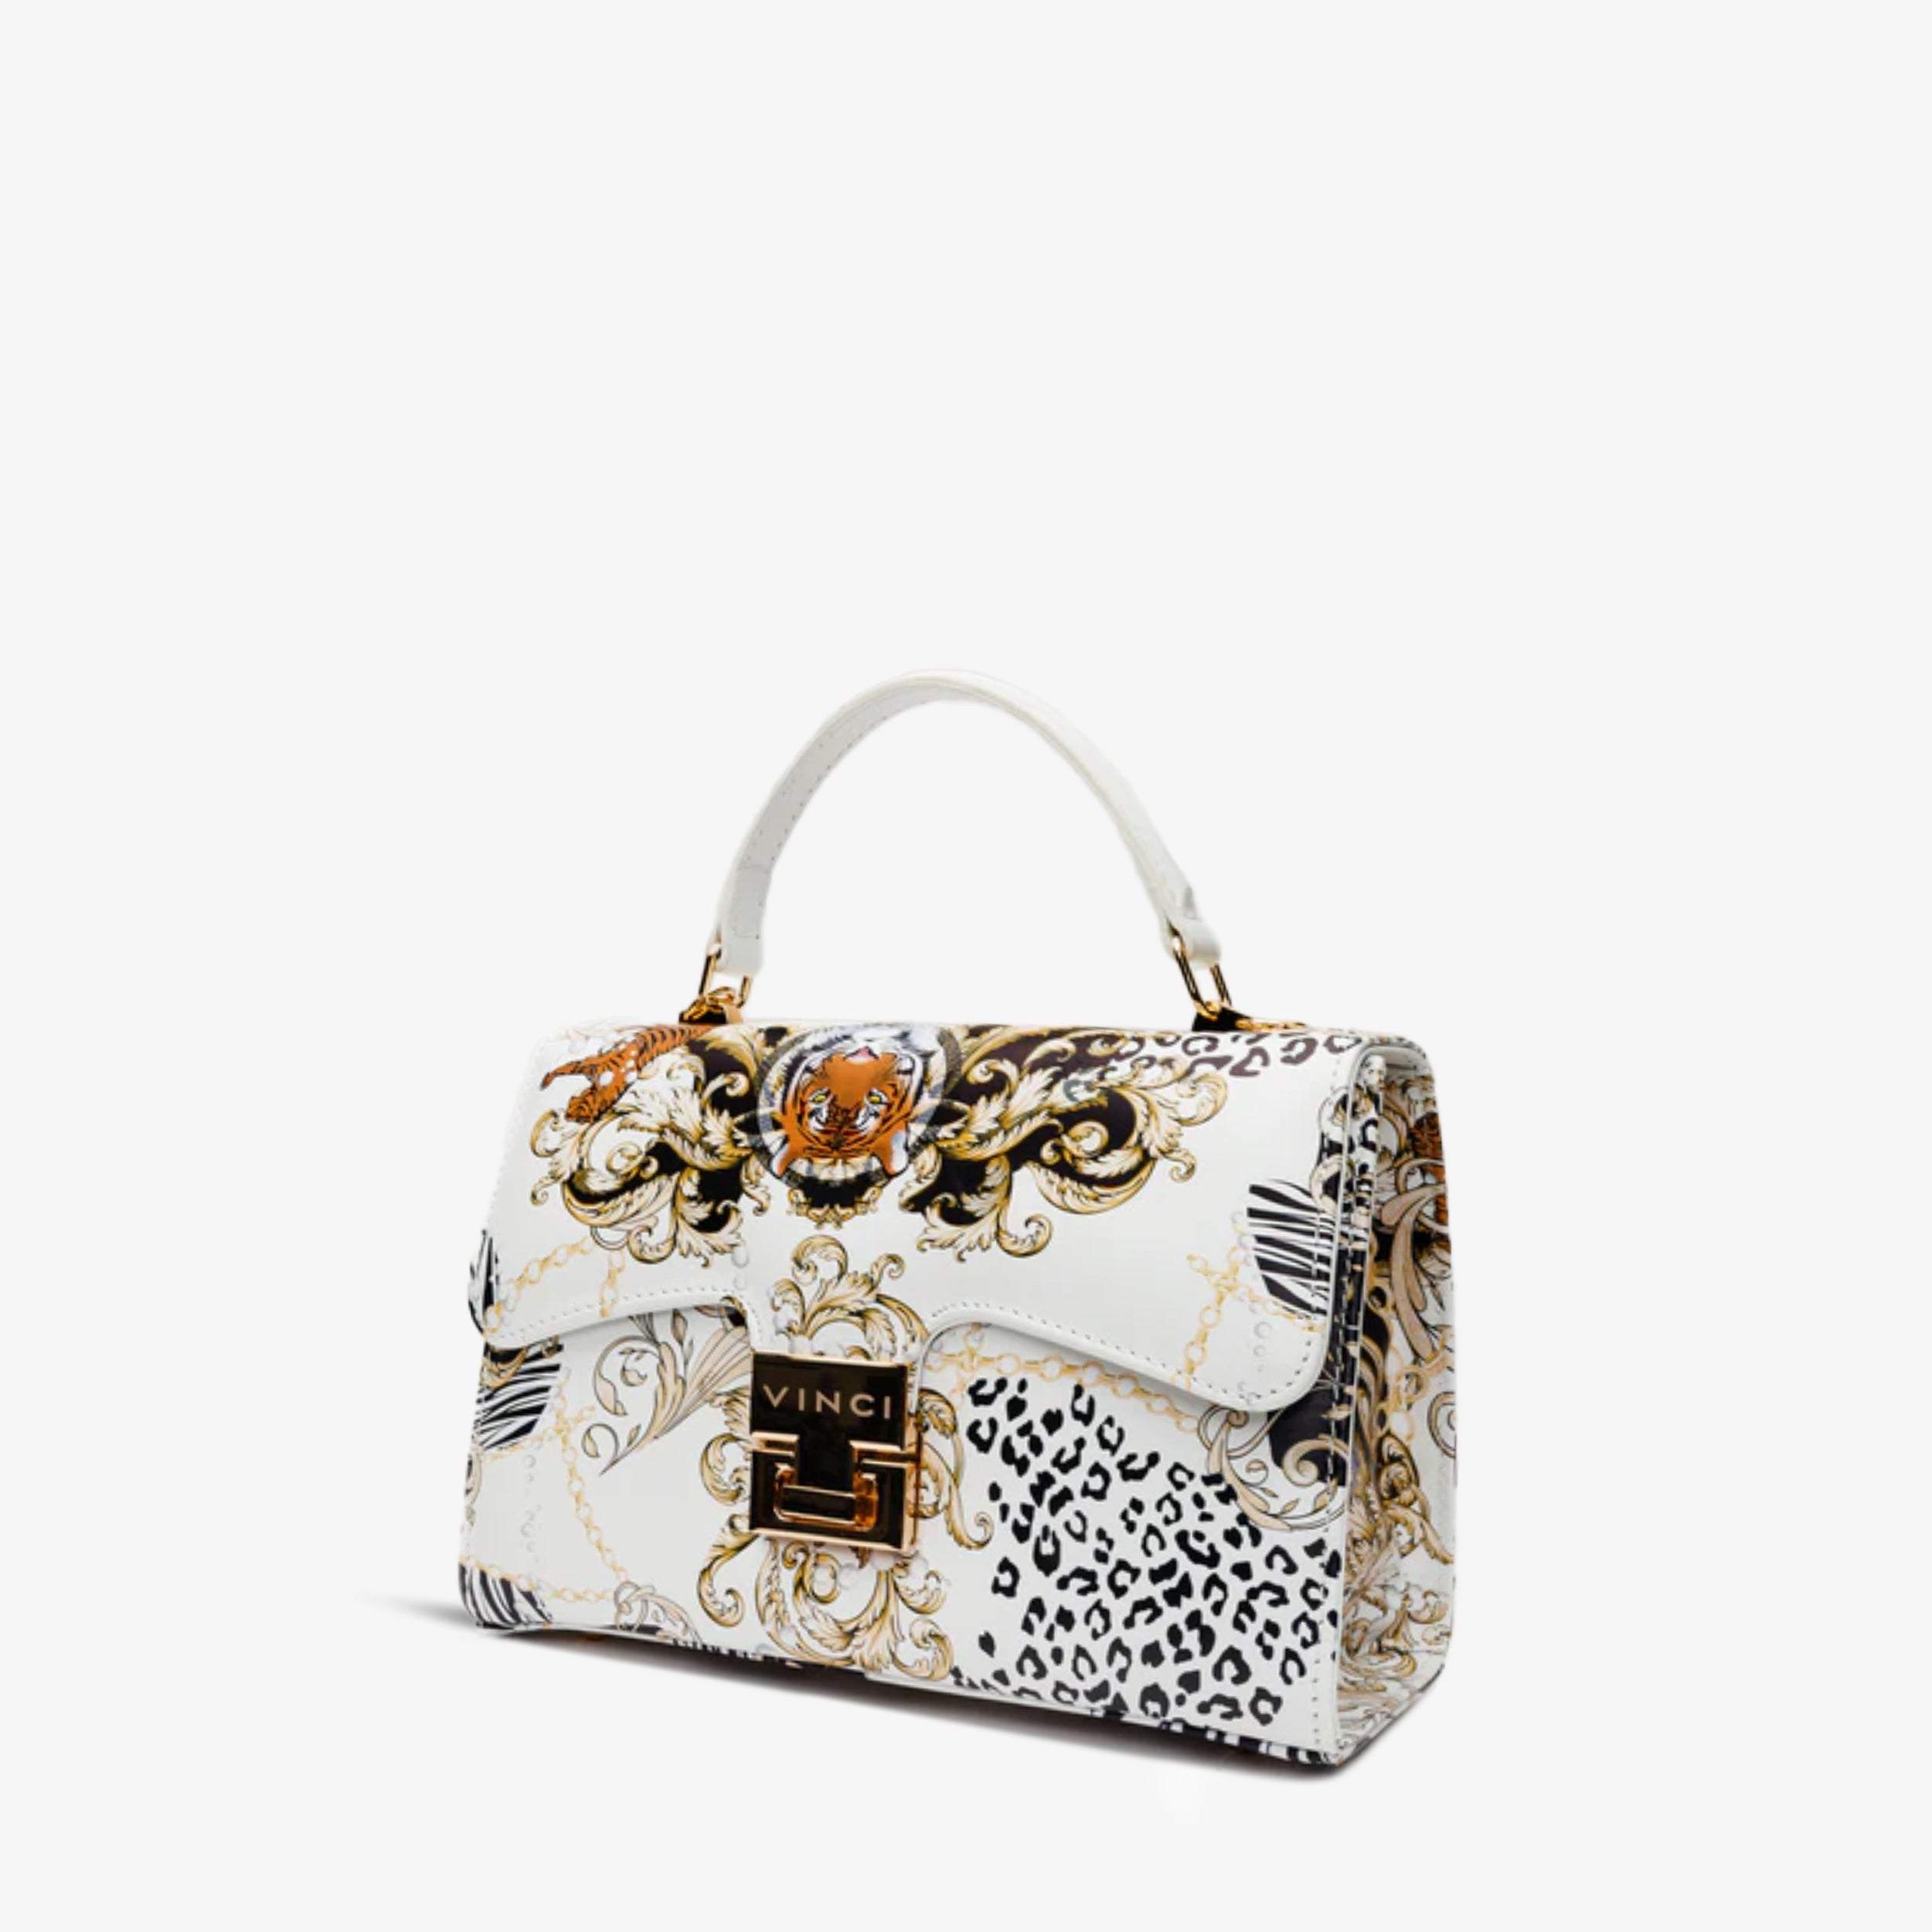 The Perugia White Leather Handbag